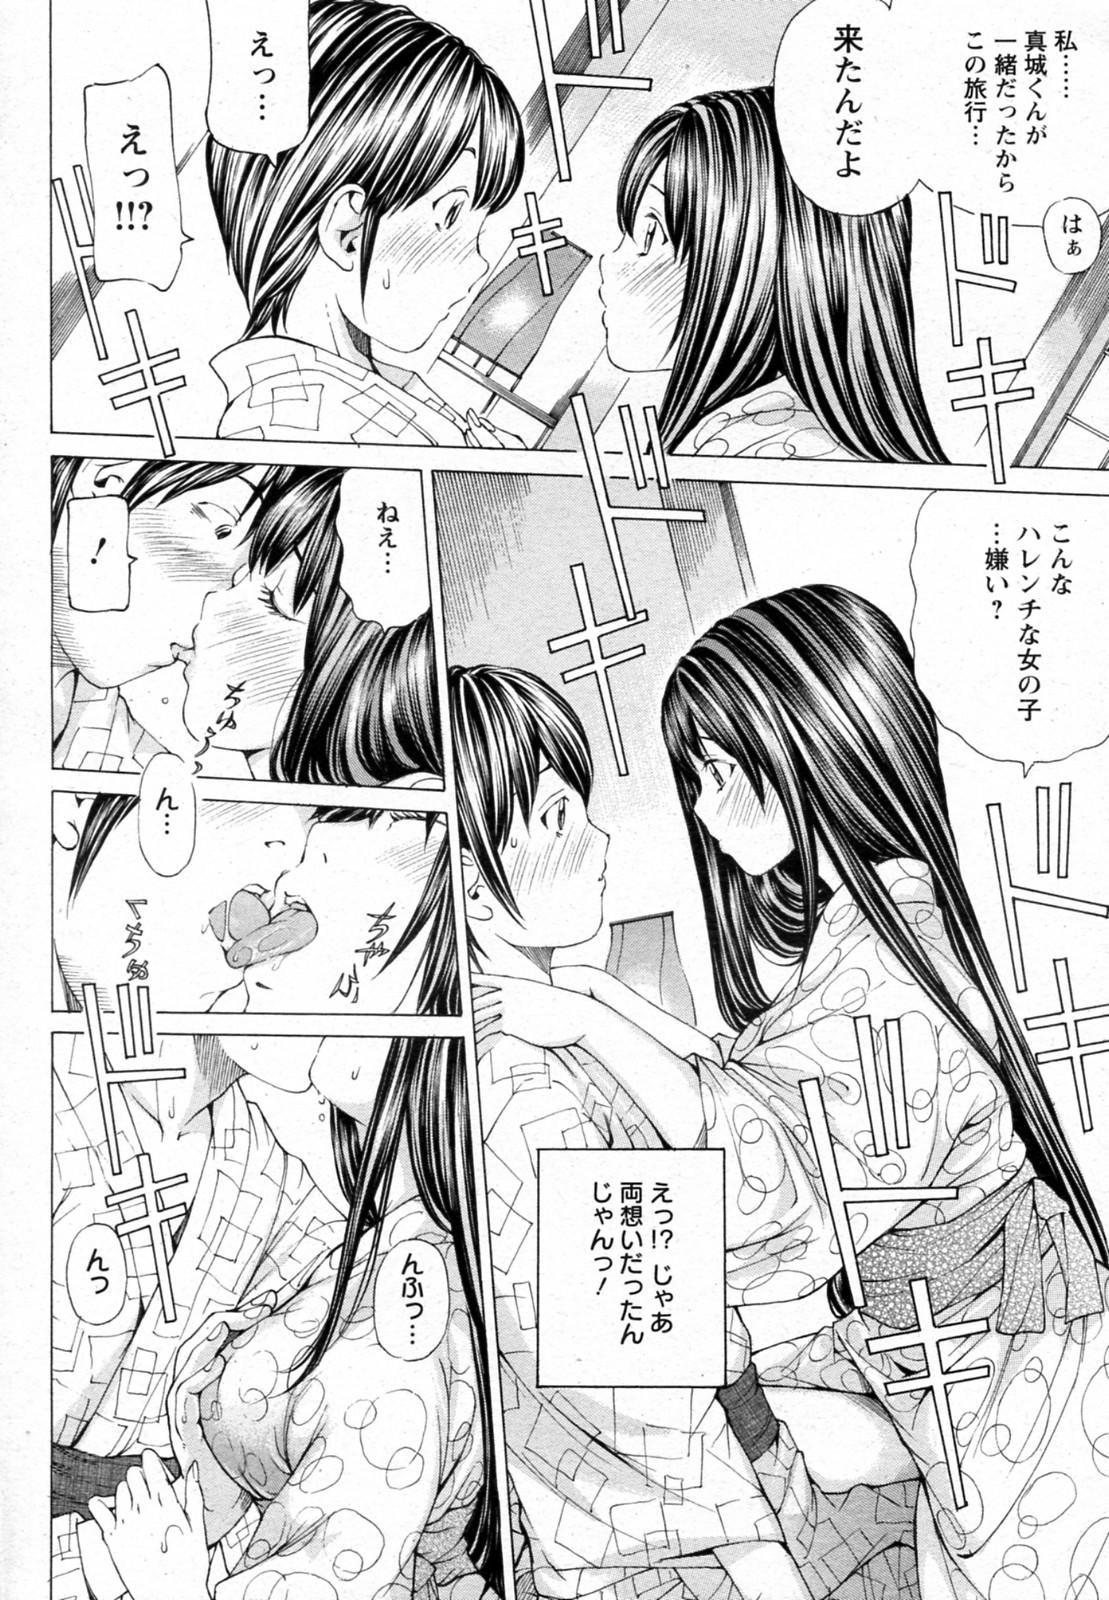 Strap On Sakuranbo no Toki Amature Sex Tapes - Page 8